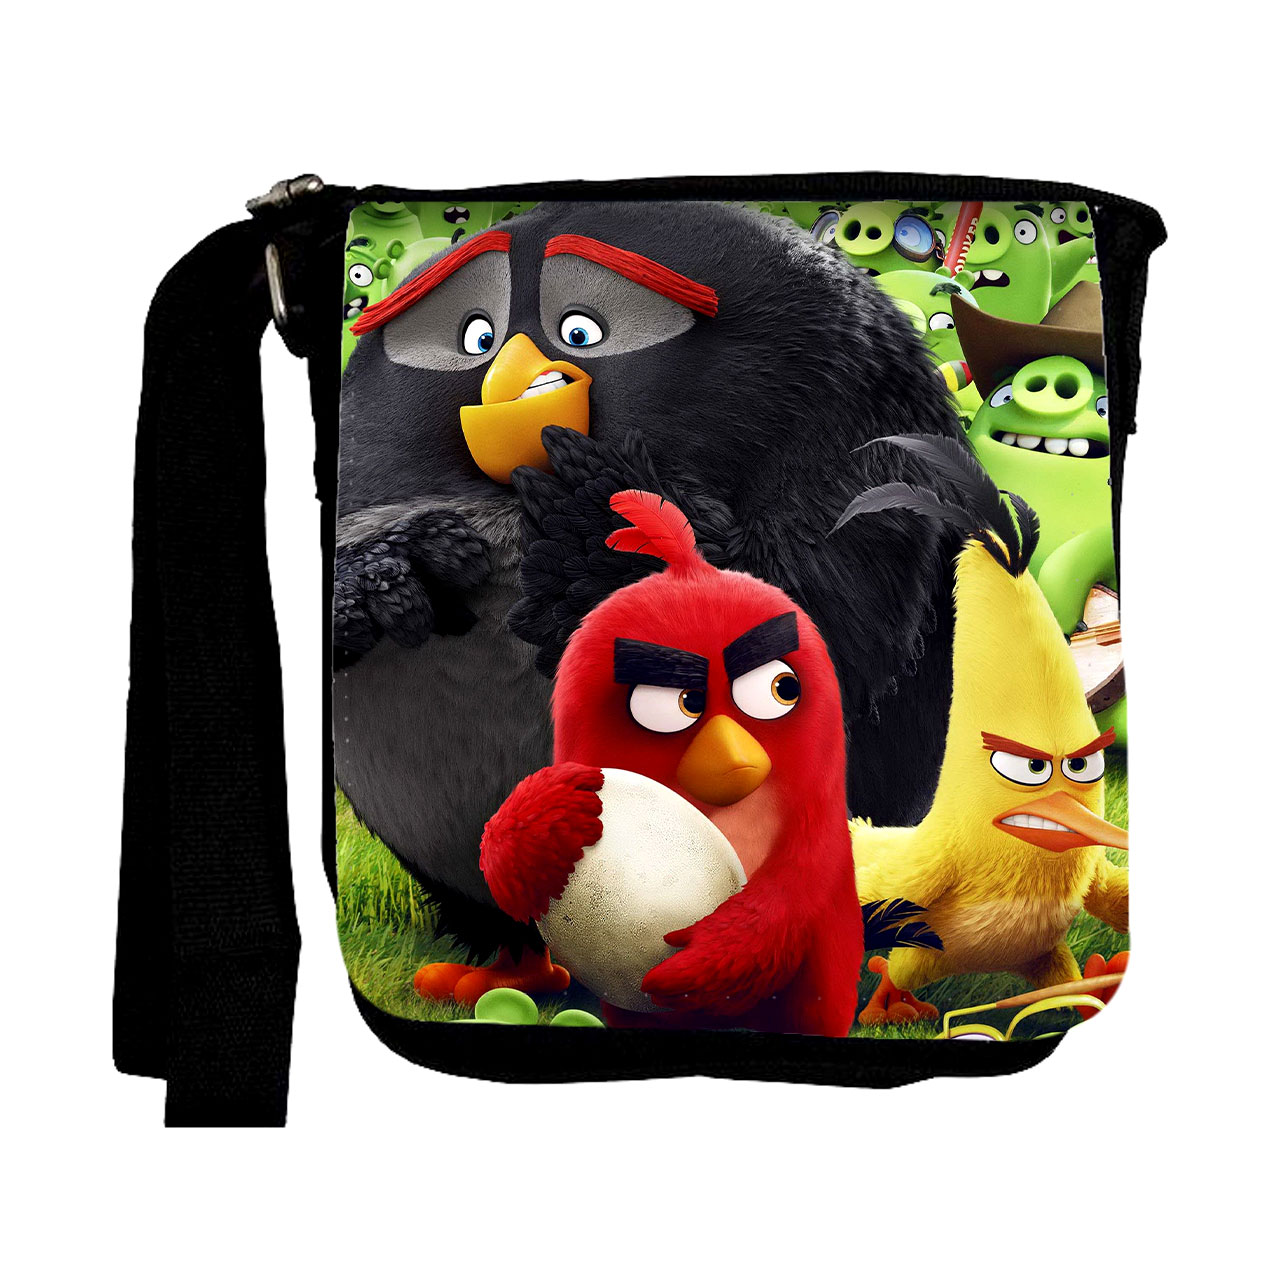 کیف رودوشی بچگانه طرح Angry Birds مدل SB0186